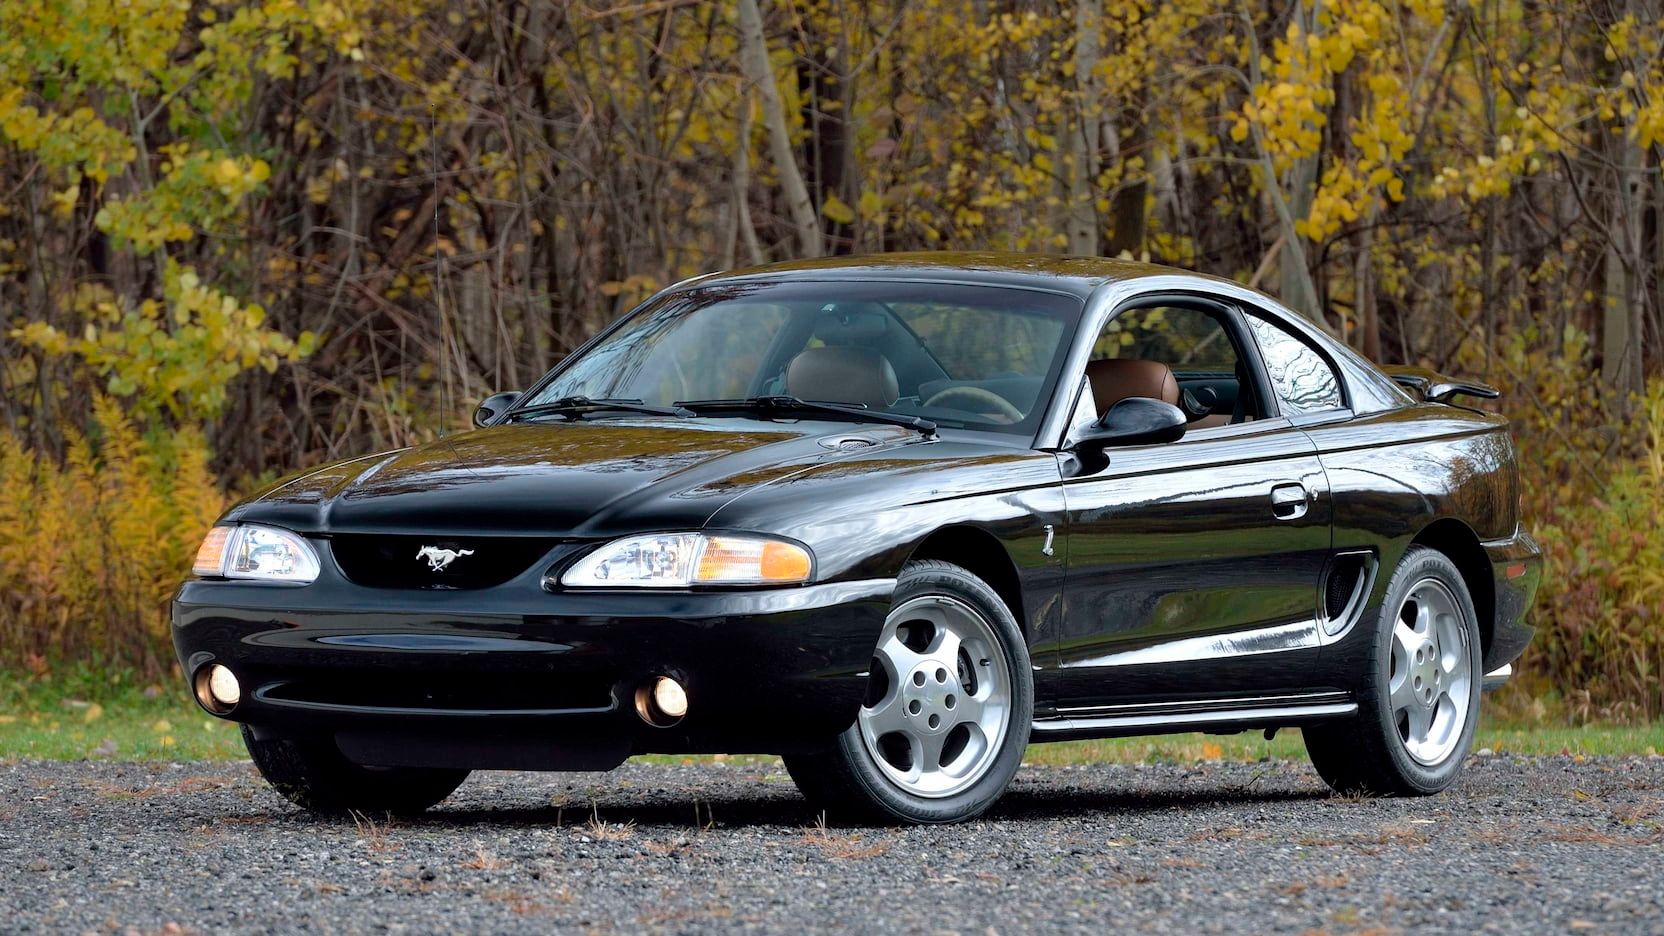 Black 1994 Mustang SN95 Parked